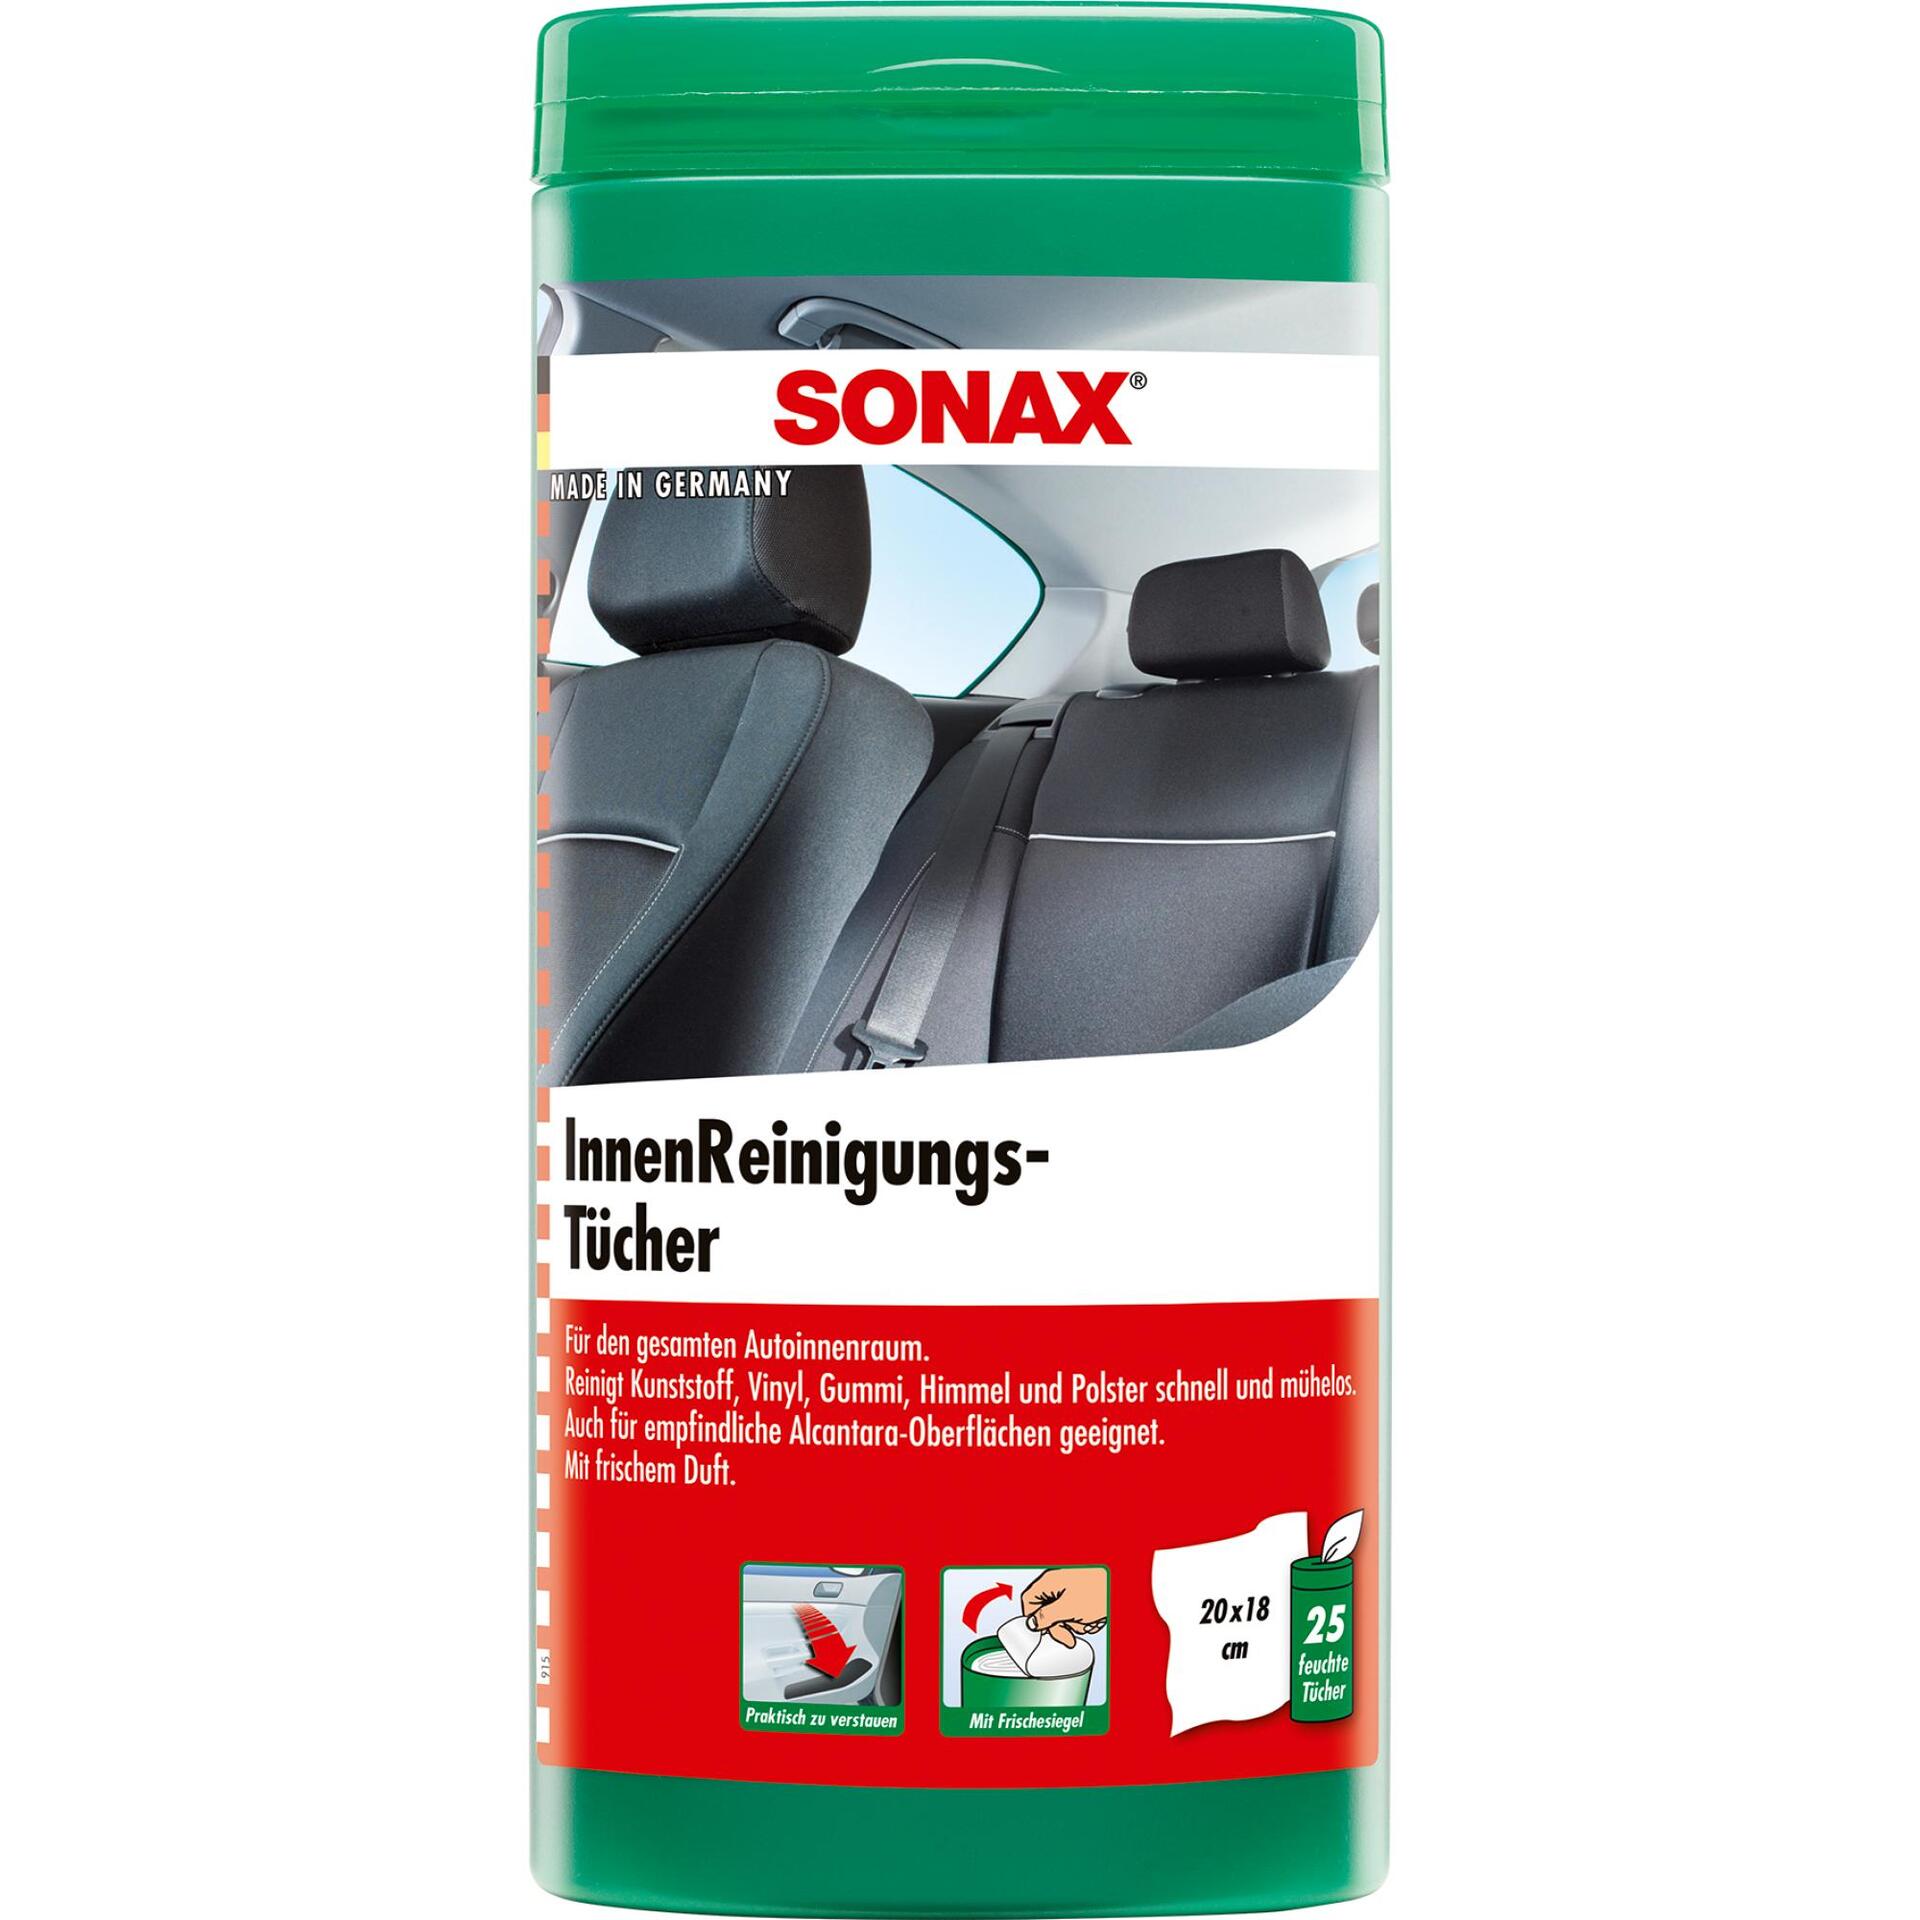 SONAX Innenreinigungs Tücher Box